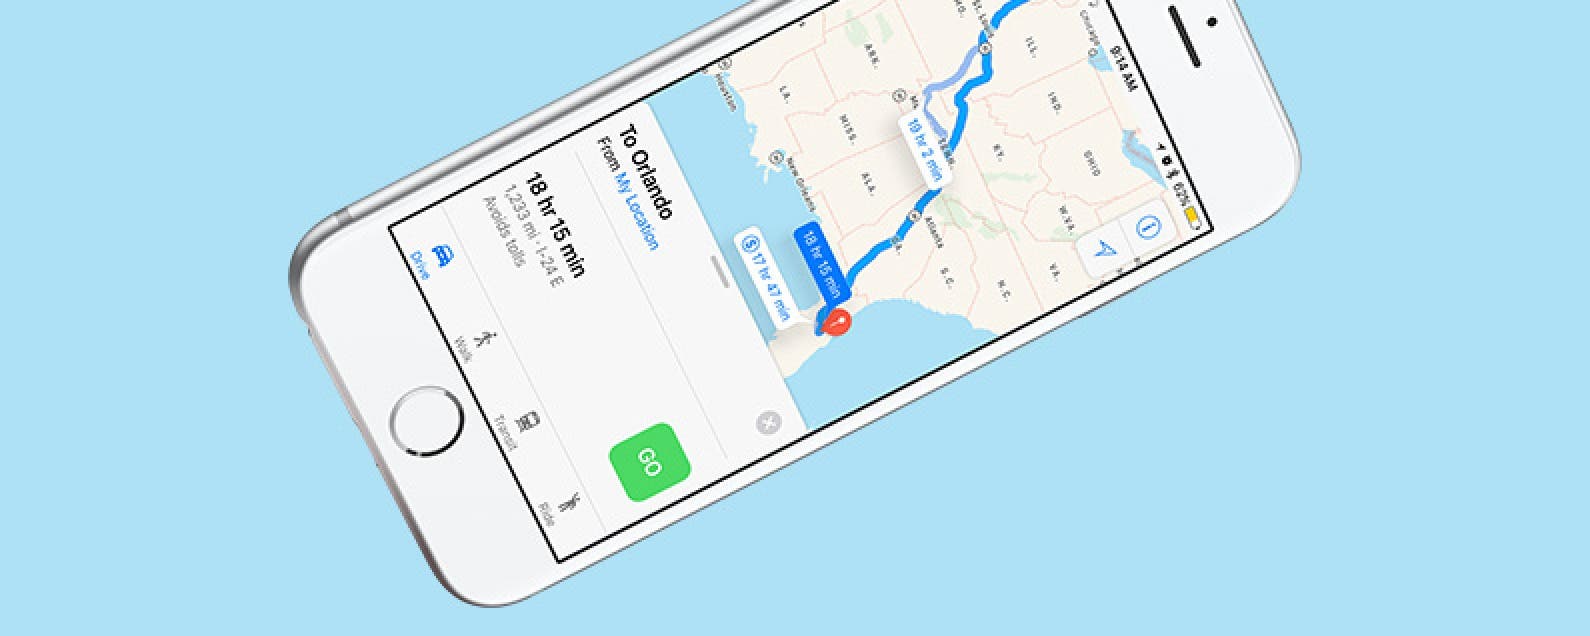 Cómo evitar las carreteras de peaje en Apple Maps con iOS 10